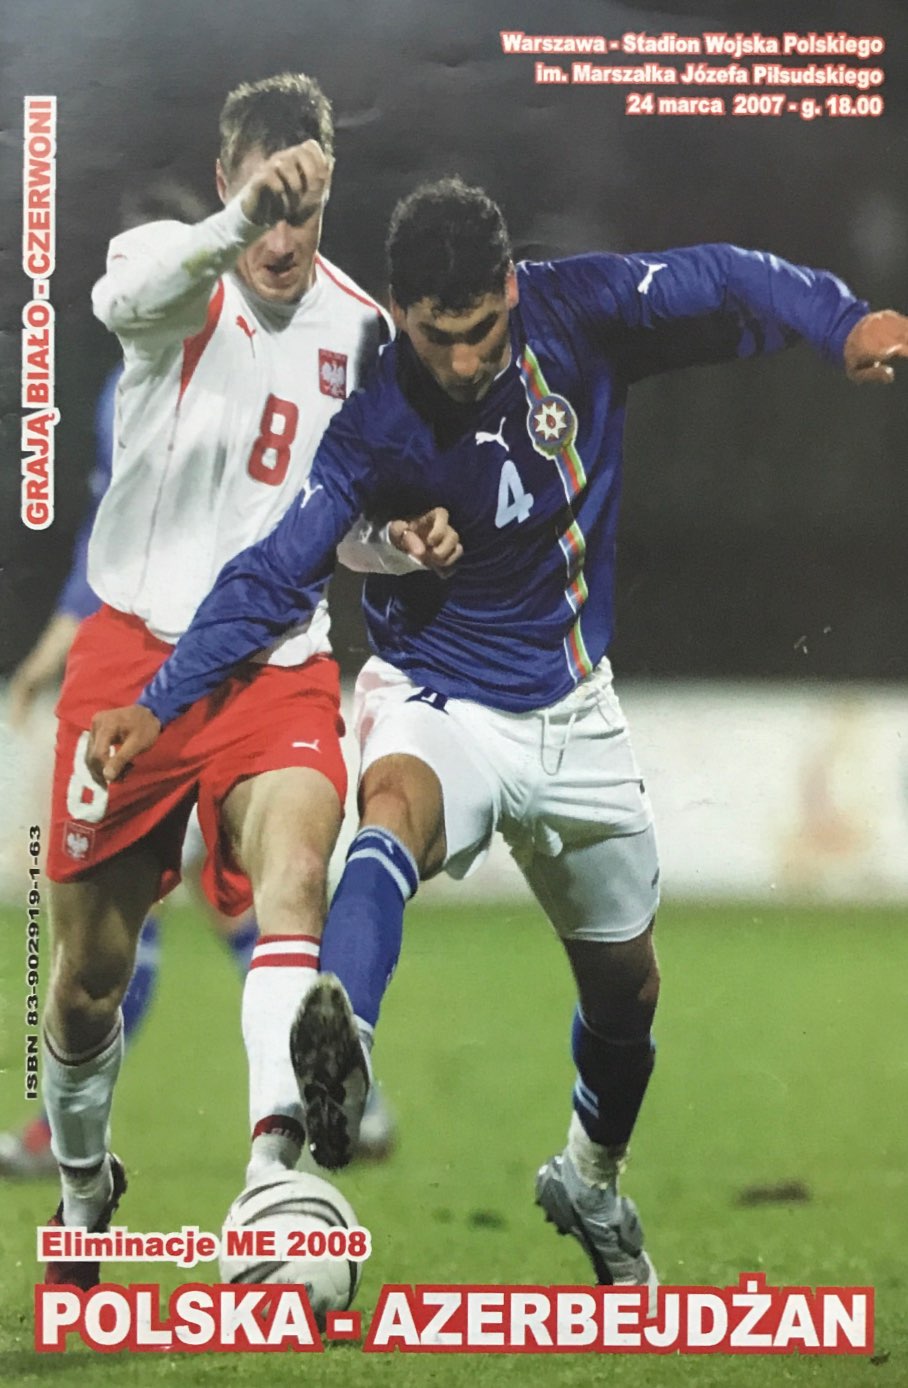 Program meczowy Polska - Azerbejdżan 5:0 (24.03.2007) .